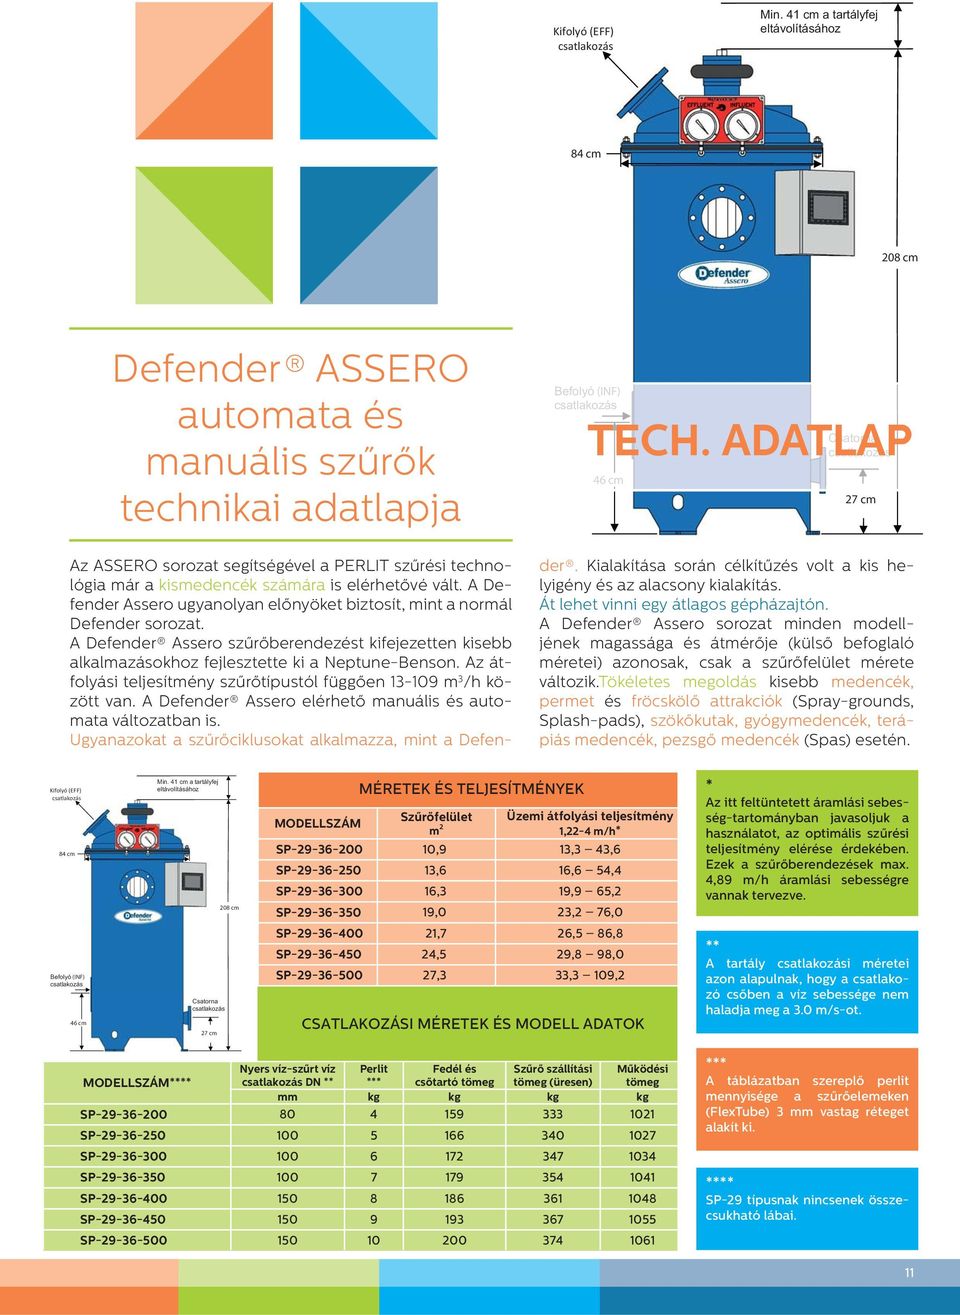 A Defender Assero ugyanolyan előnyöket biztosít, mint a normál Defender sorozat. A Defender Assero szűrőberendezést kifejezetten kisebb alkalmazásokhoz fejlesztette ki a Neptune-Benson.